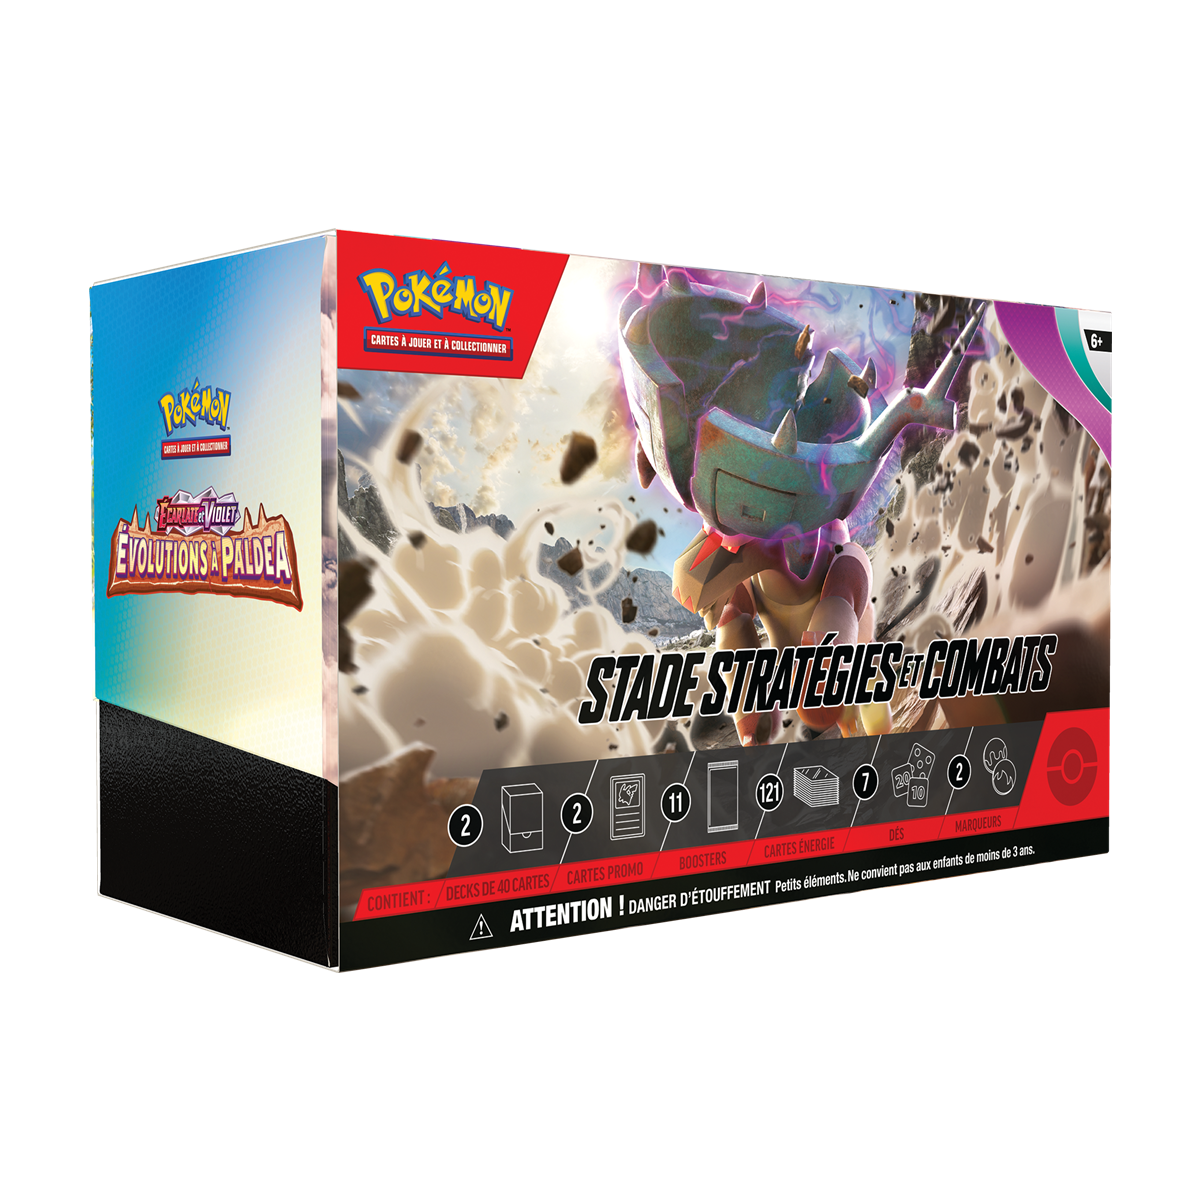 Pokémon - Strategies and Battles Stadium - Scarlet & Violet Evolutions in Paldea - [EV02] - FR